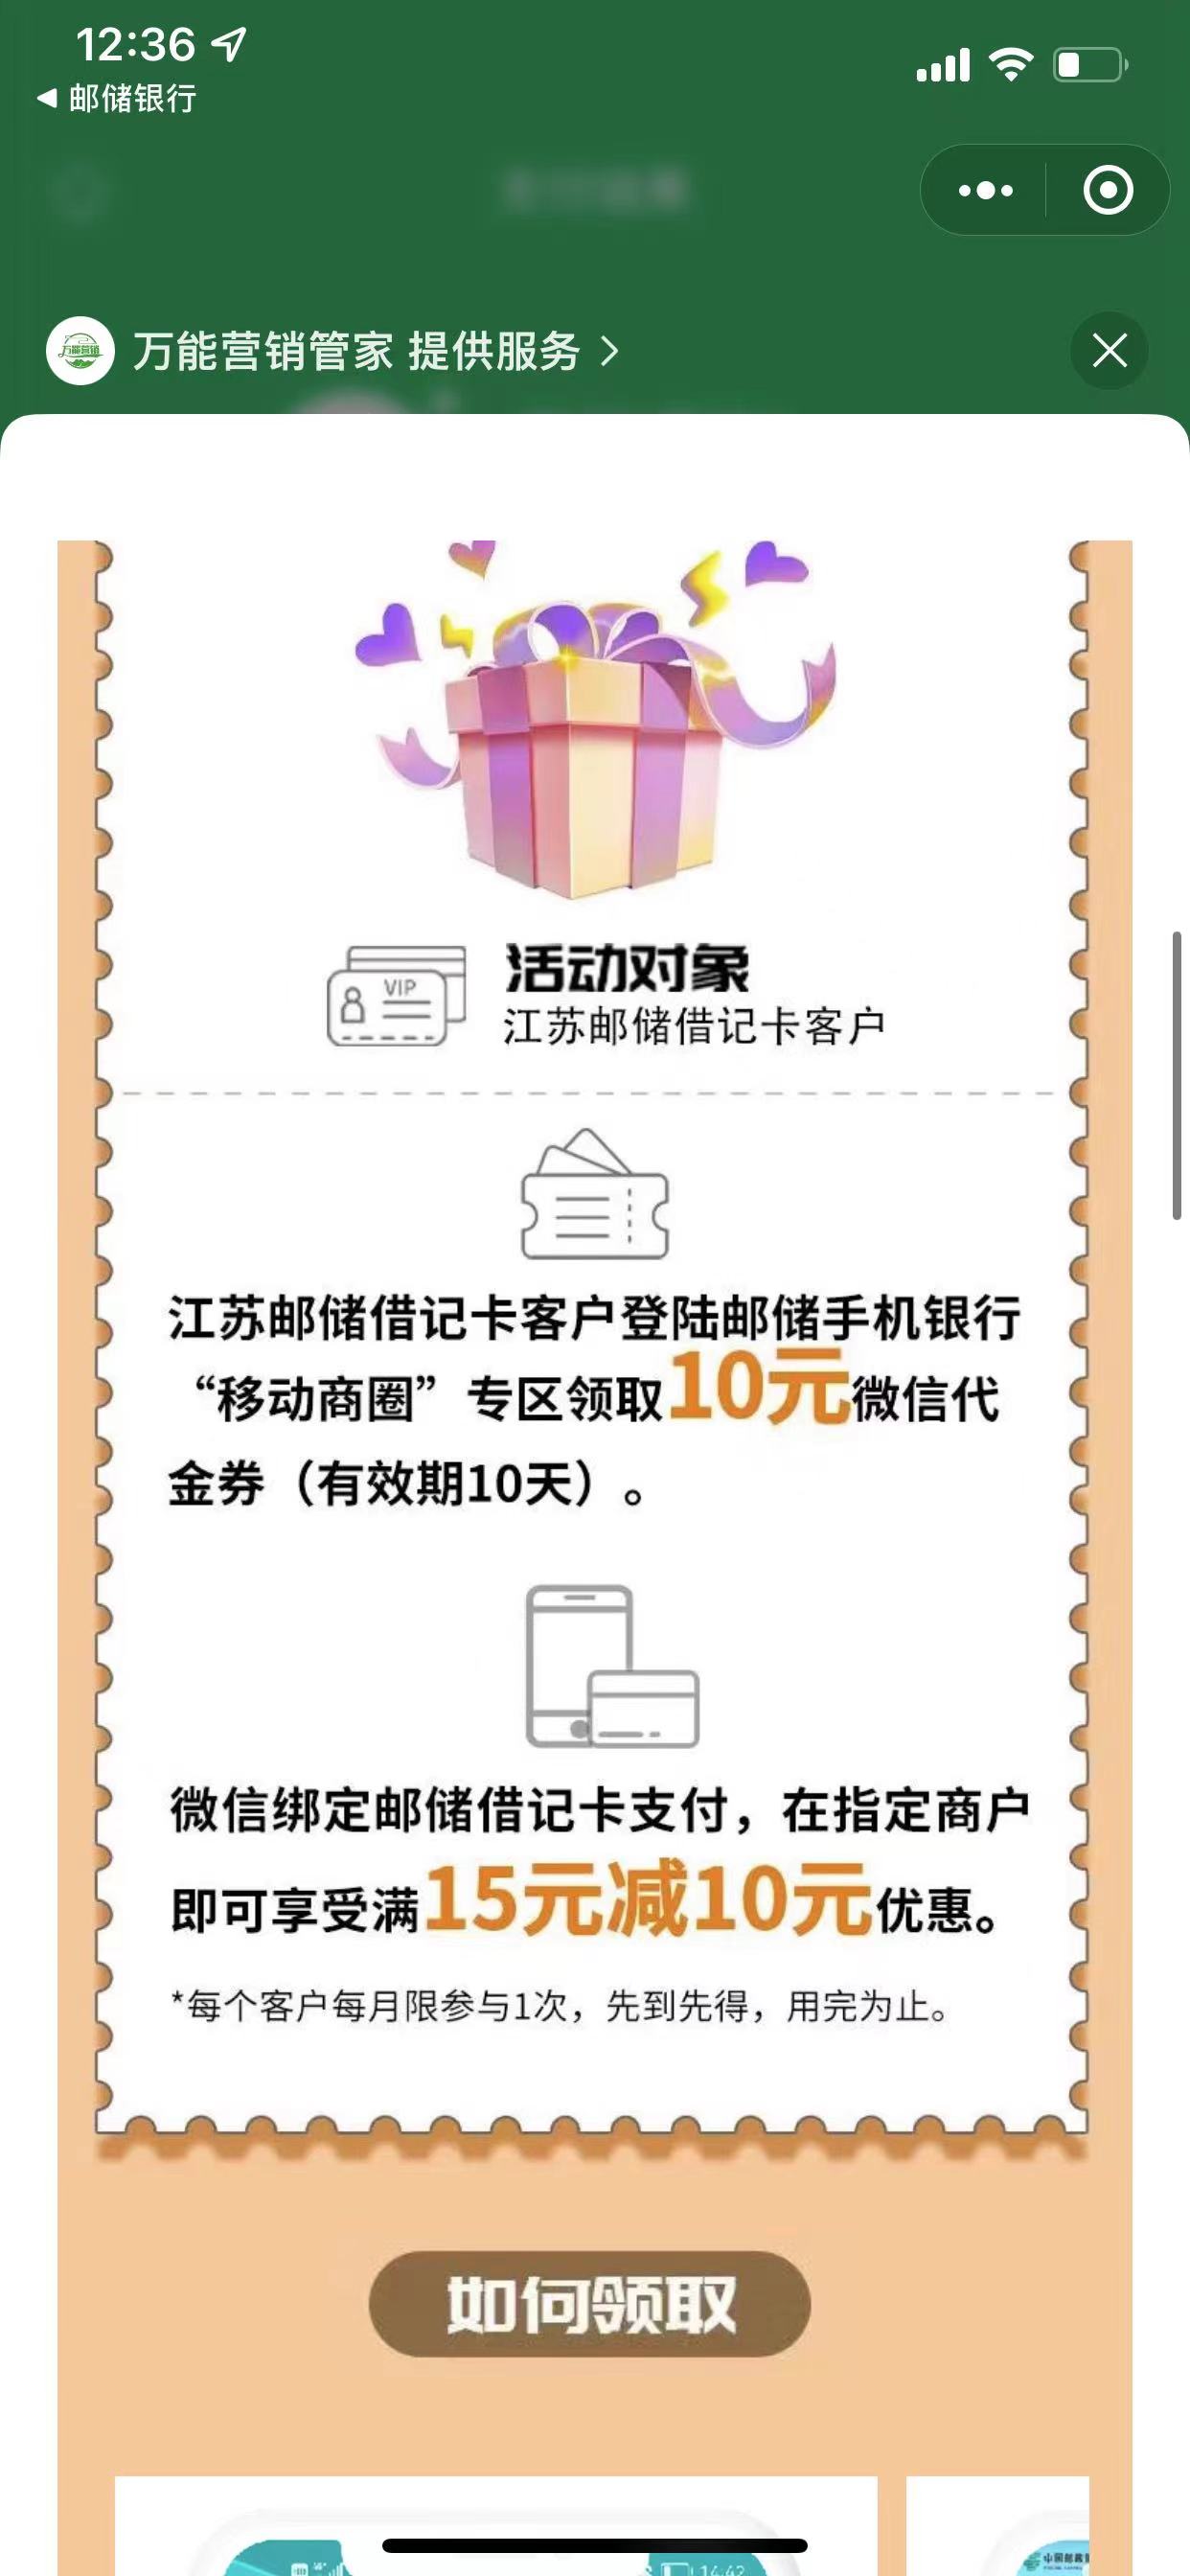 江苏邮政 10毛-惠小助(52huixz.com)